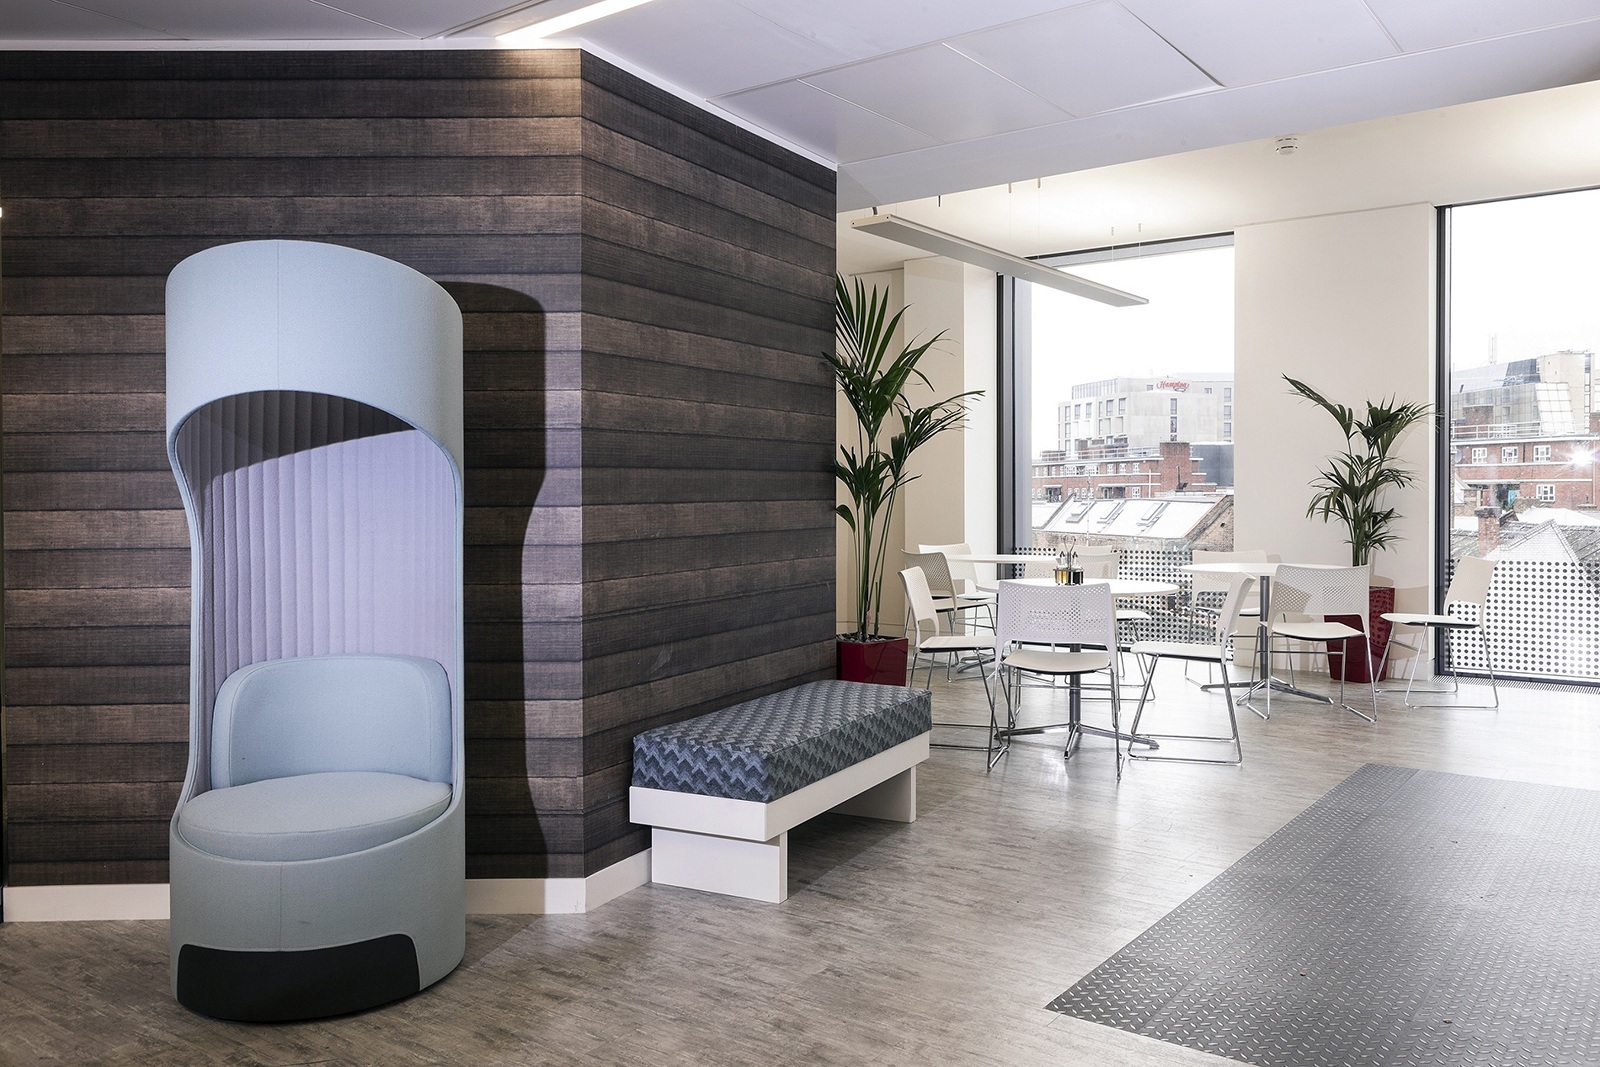 Take a Look at Fieldglass’ Elegant Office in London